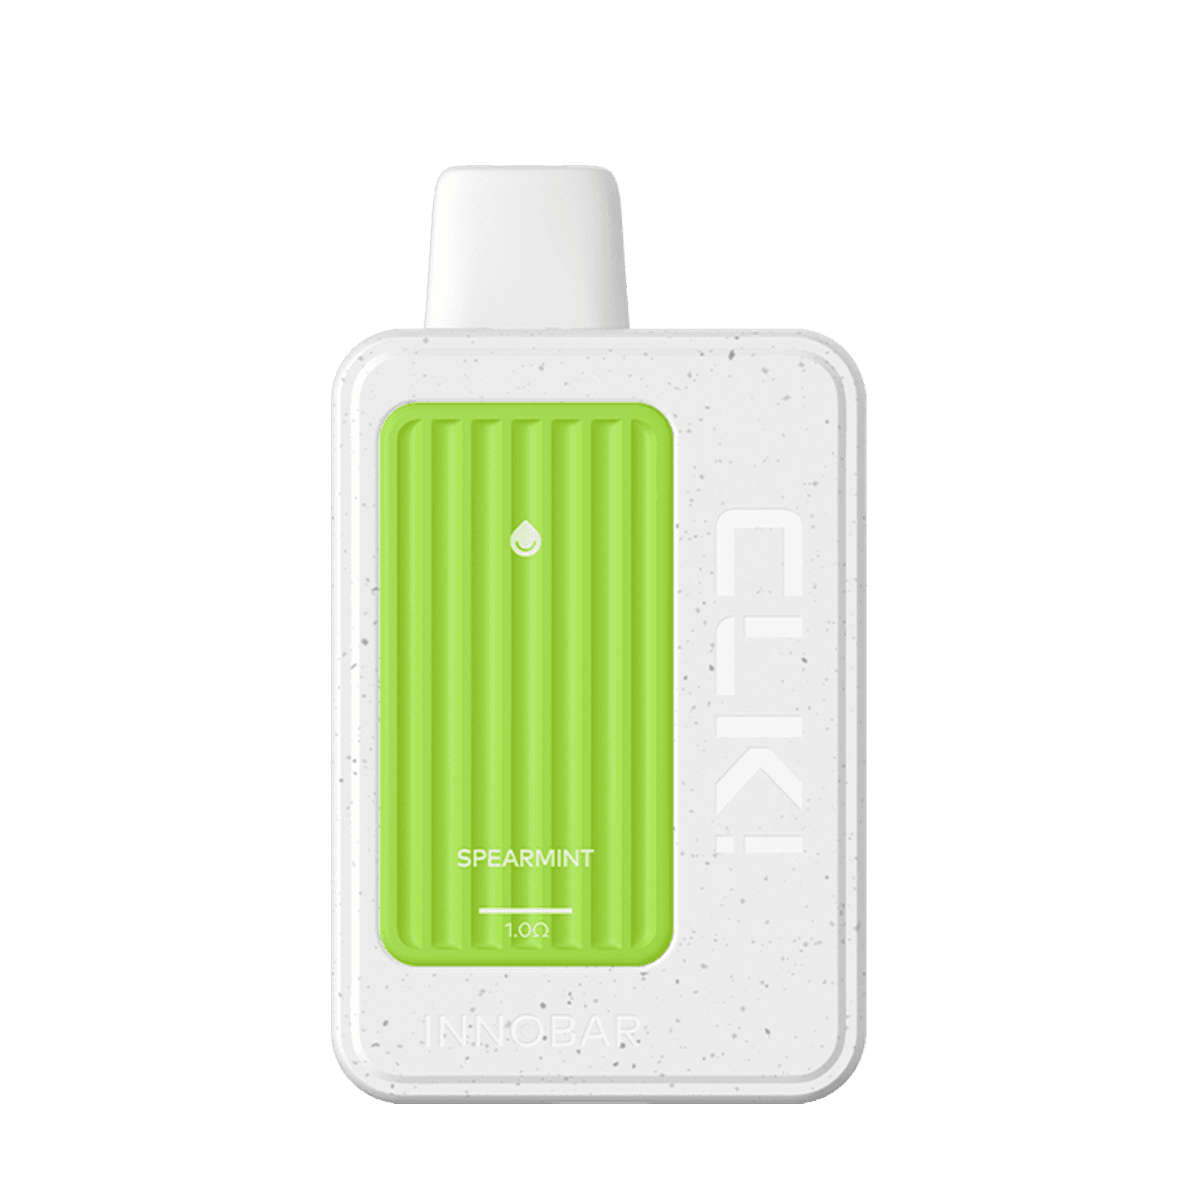 InnoBar CLK Disposable Vape White Spearmint 